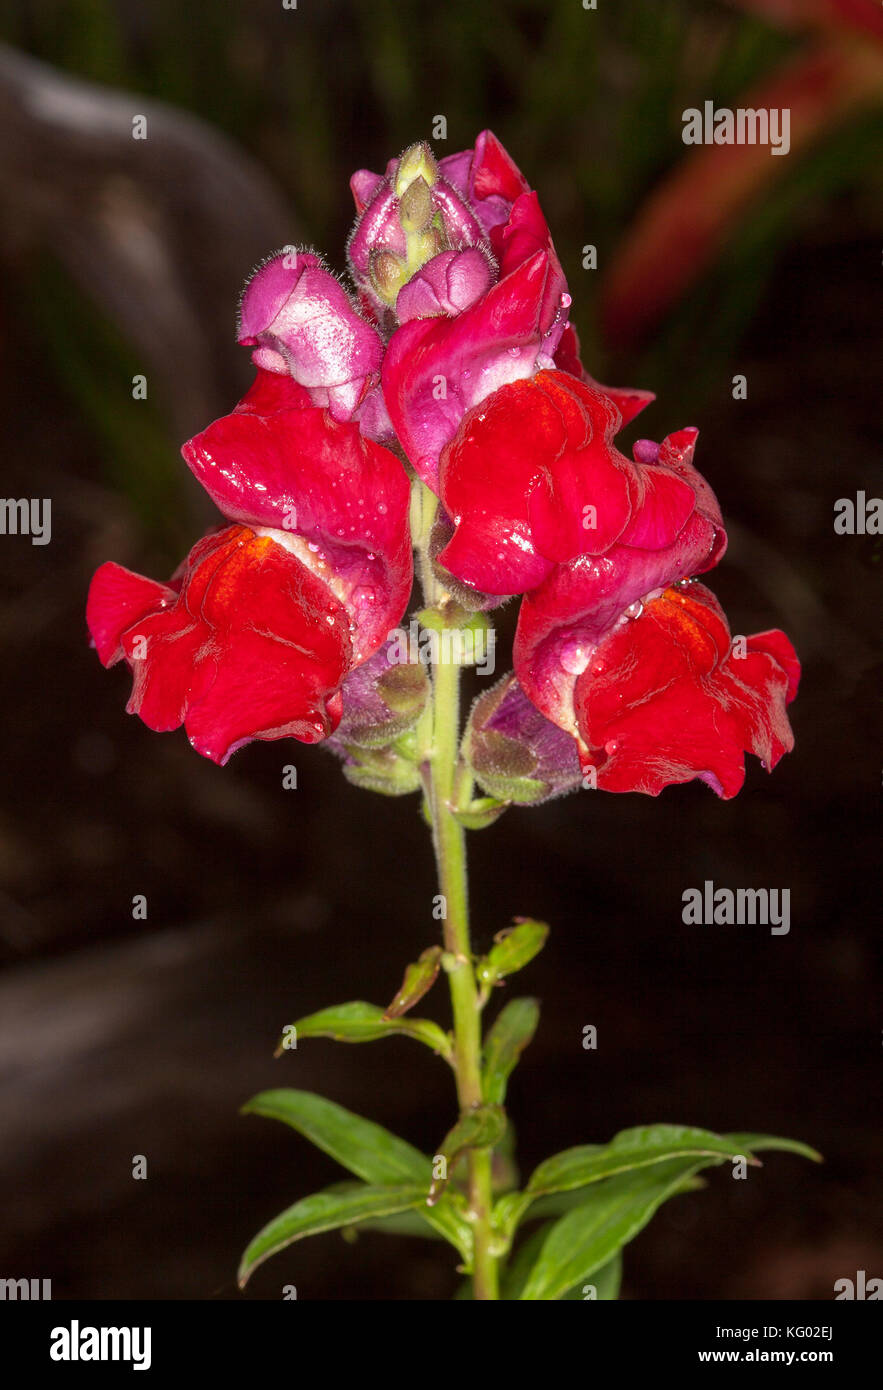 Leuchtend roten Blüten der jährlichen Snapdragon, Antirrhinum majus, auf dunklem Hintergrund Stockfoto